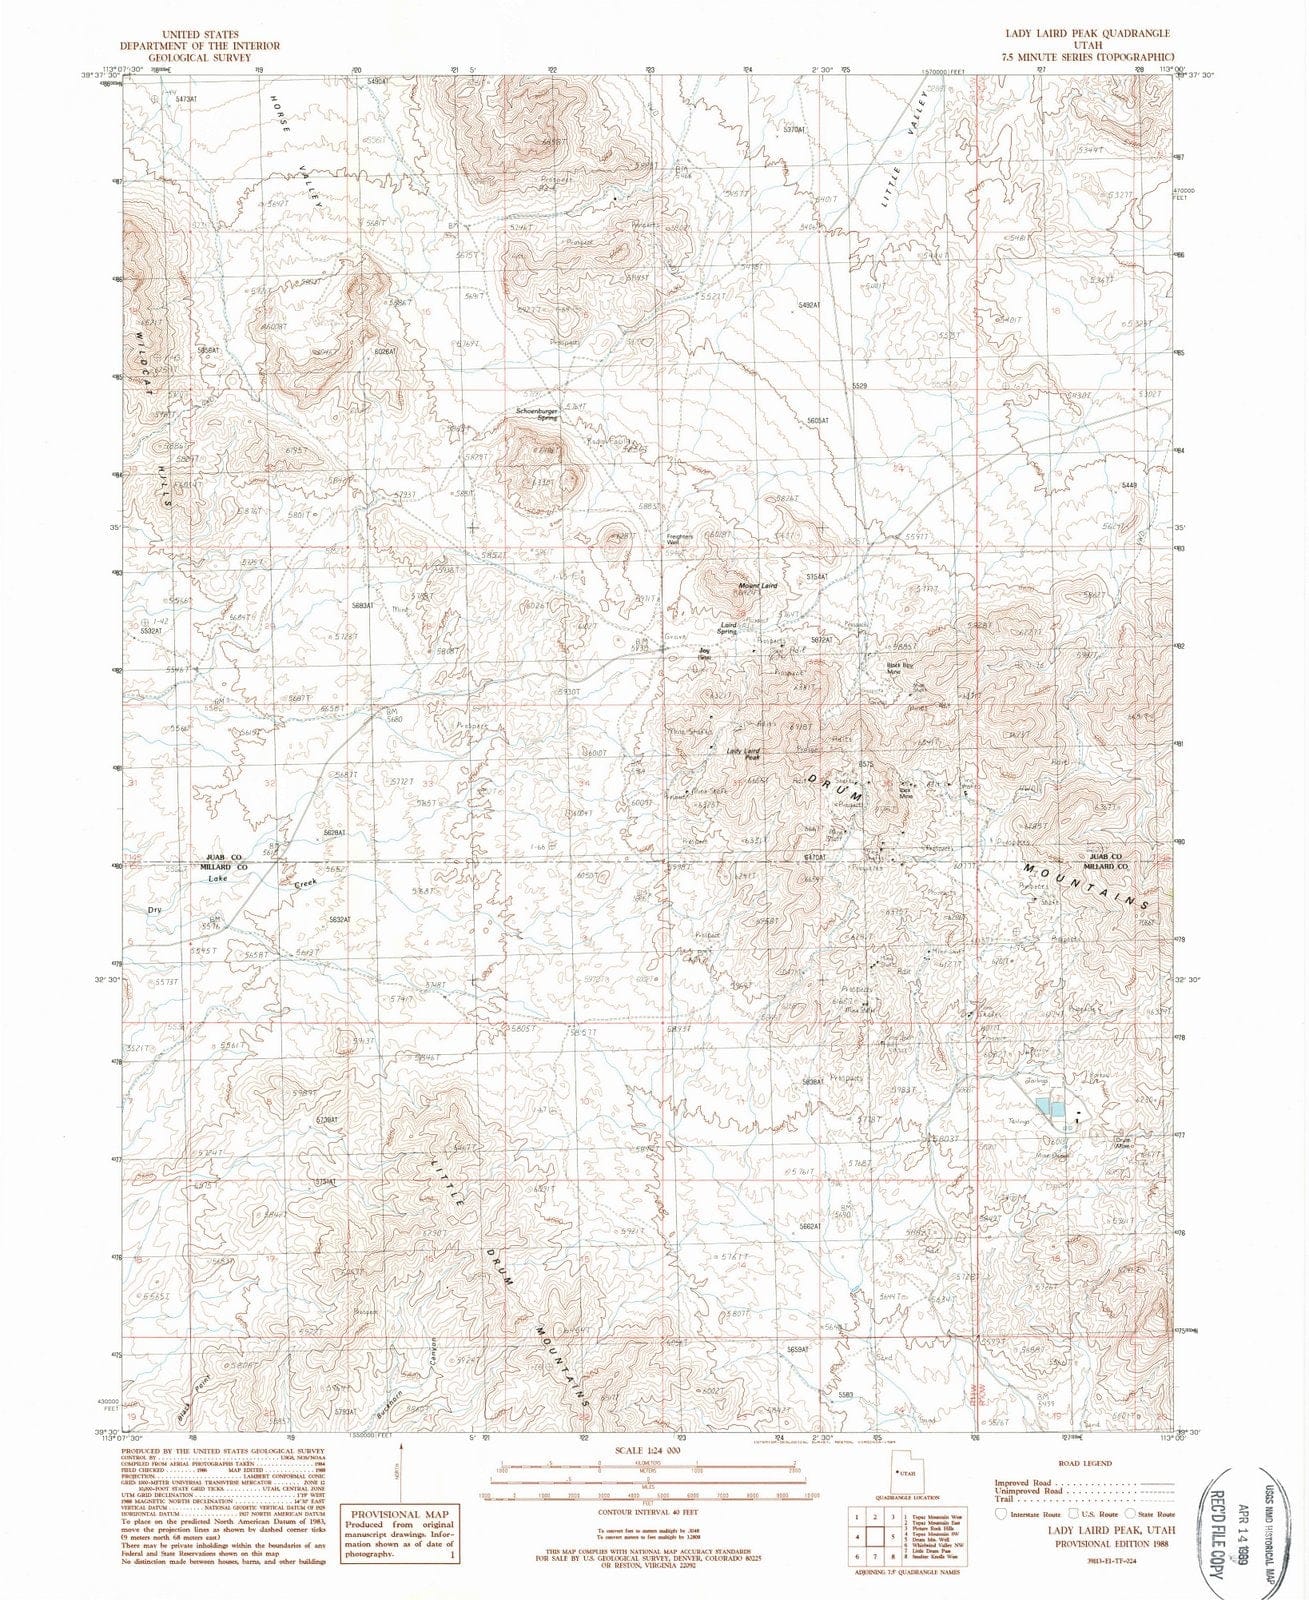 1988 Lady Laird Peak, UT - Utah - USGS Topographic Map